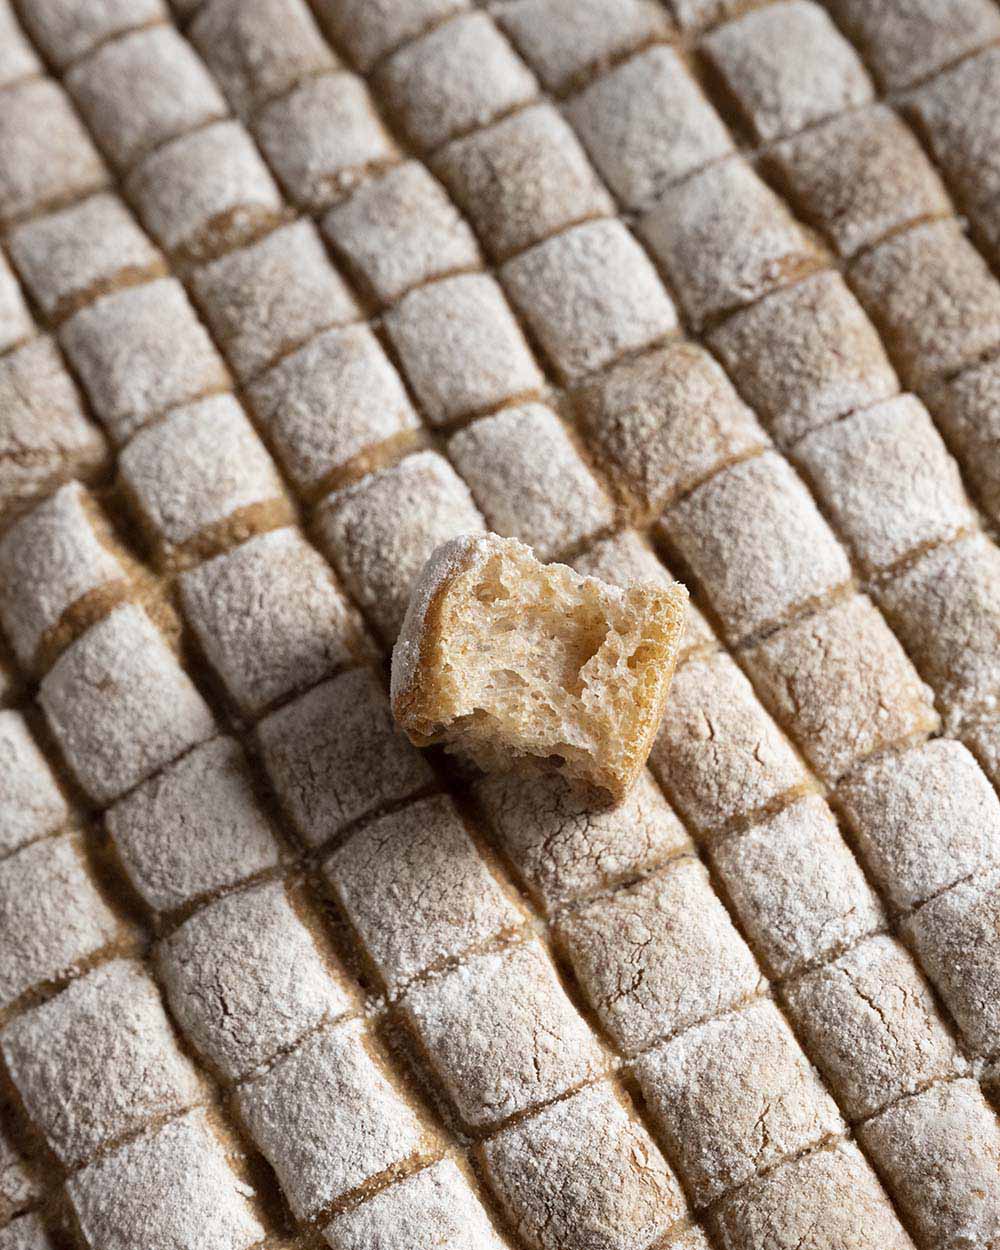 Unser Fondue-Brot ist fertig gebacke. Die Aufnahme zeigt einen einzelnen Würfel, den wir abgebrochen und auf die ganze Oberflüche des Brots gelegt haben.